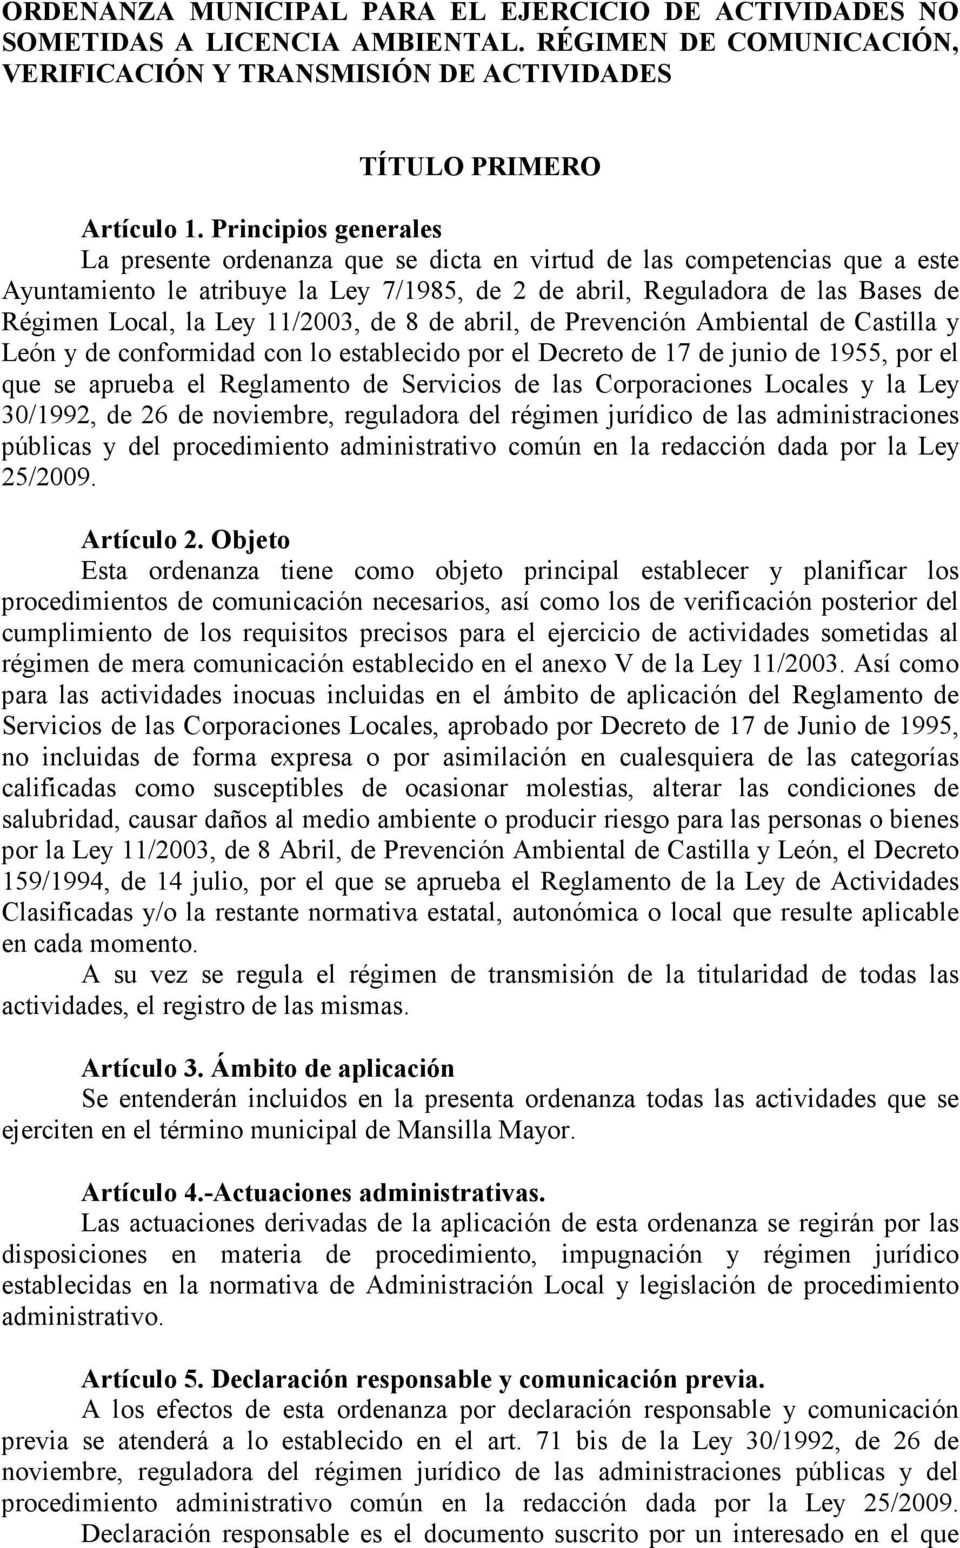 Ley 11/2003, de 8 de abril, de Prevención Ambiental de Castilla y León y de conformidad con lo establecido por el Decreto de 17 de junio de 1955, por el que se aprueba el Reglamento de Servicios de